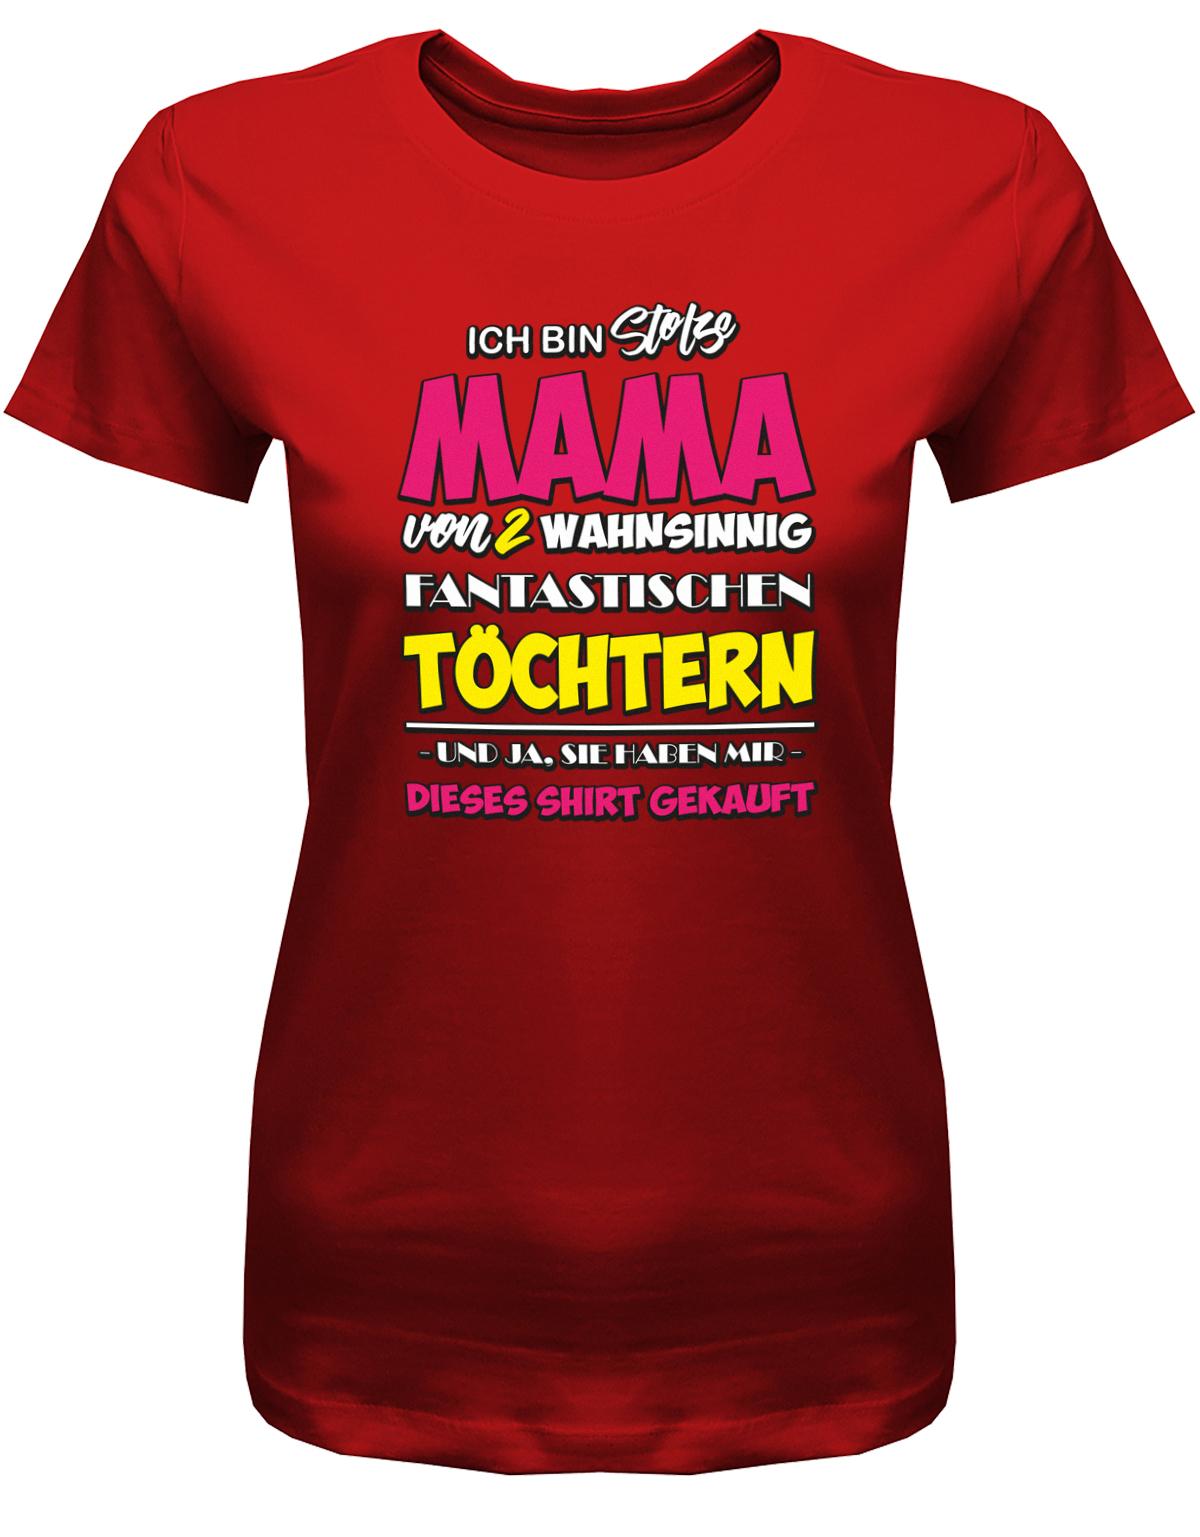 Ich-bin-stolze-mama-von-2-T-chtern-Damen-Shirt-Rot